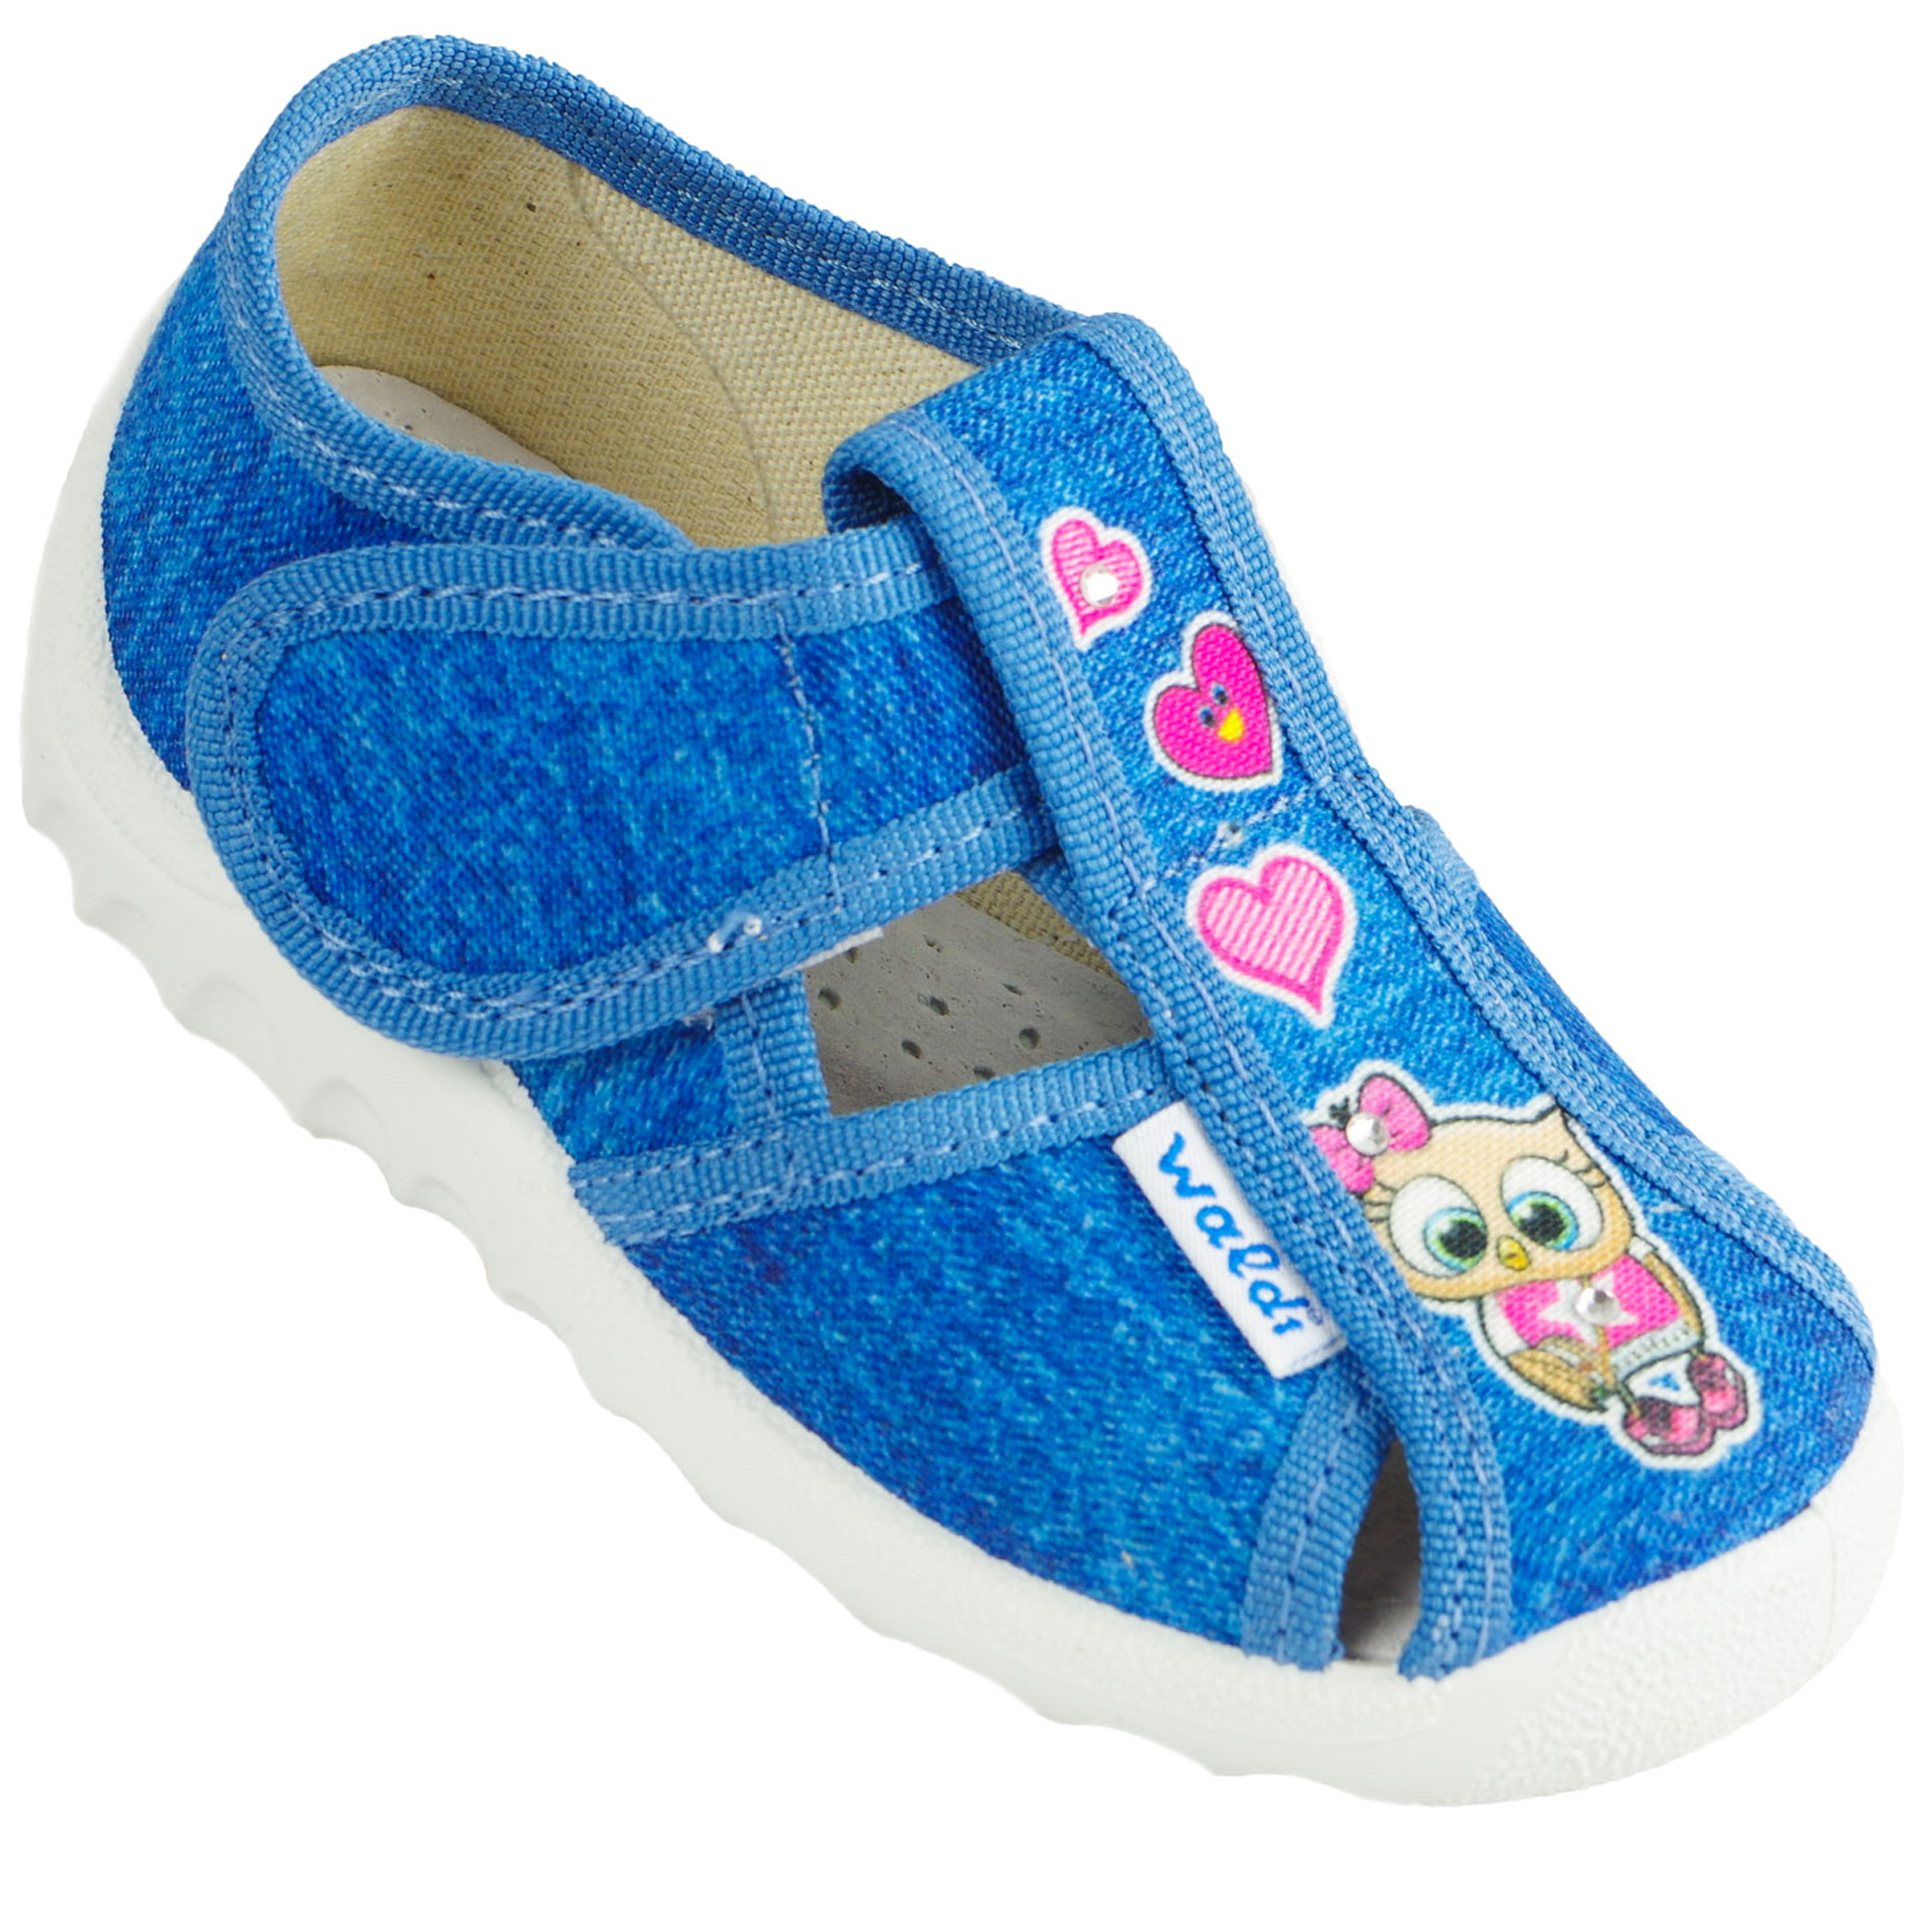 Текстильная обувь для девочек Тапочки Сова (2043) цвет Розовый 21-27 размеры – Sole Kids